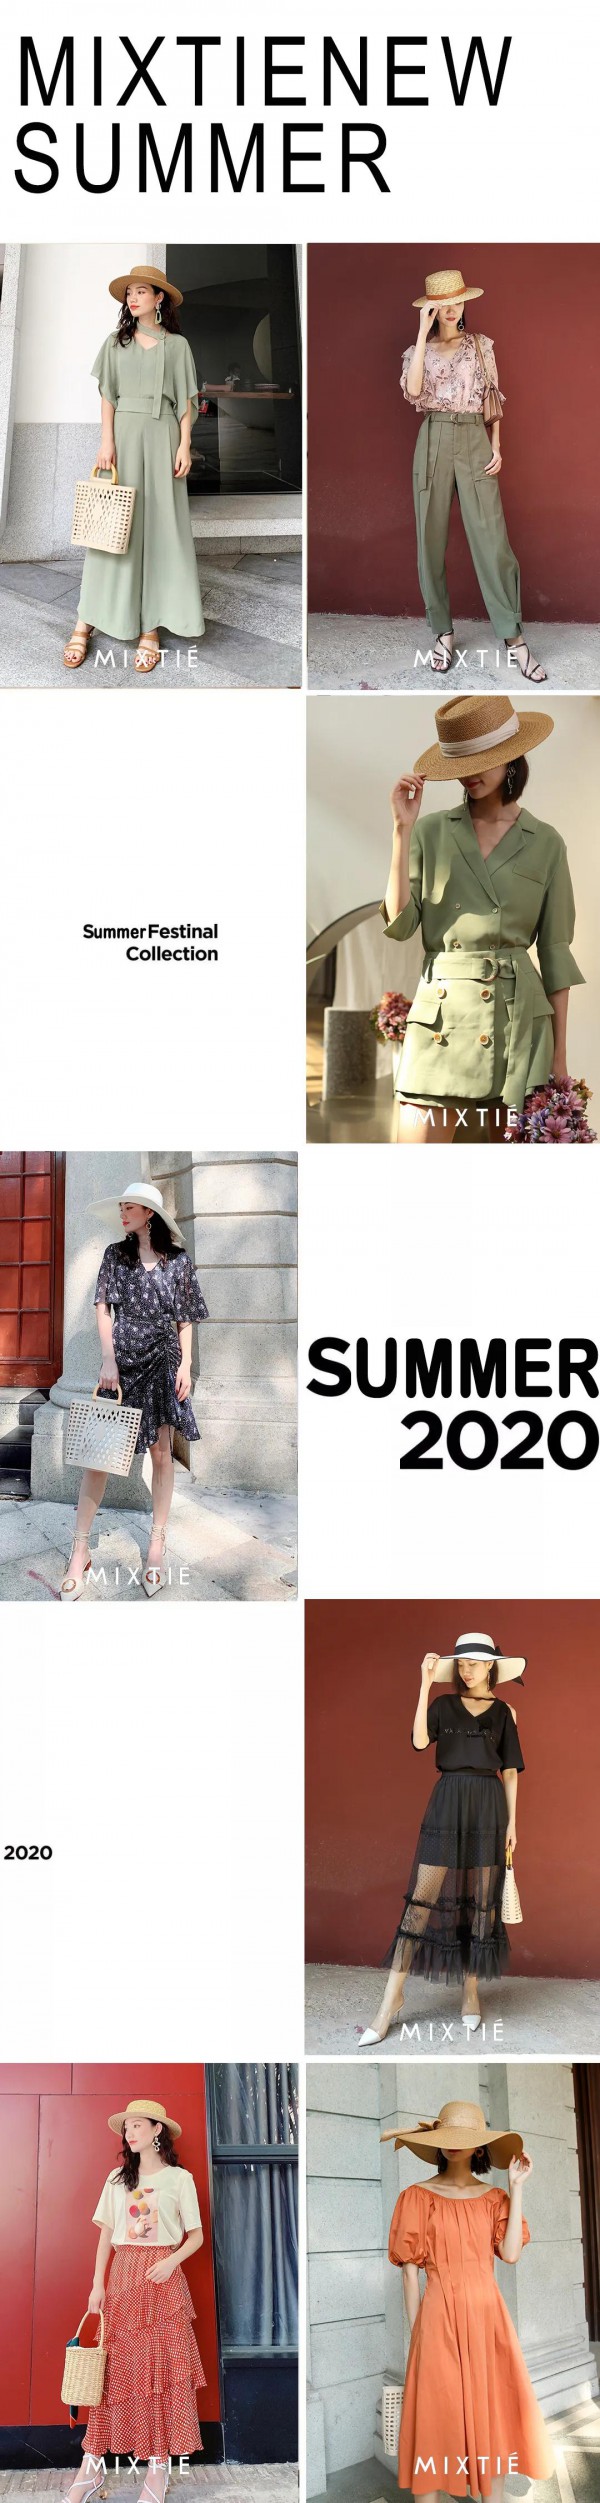 2020夏季女装流行颜色流行趋势指南